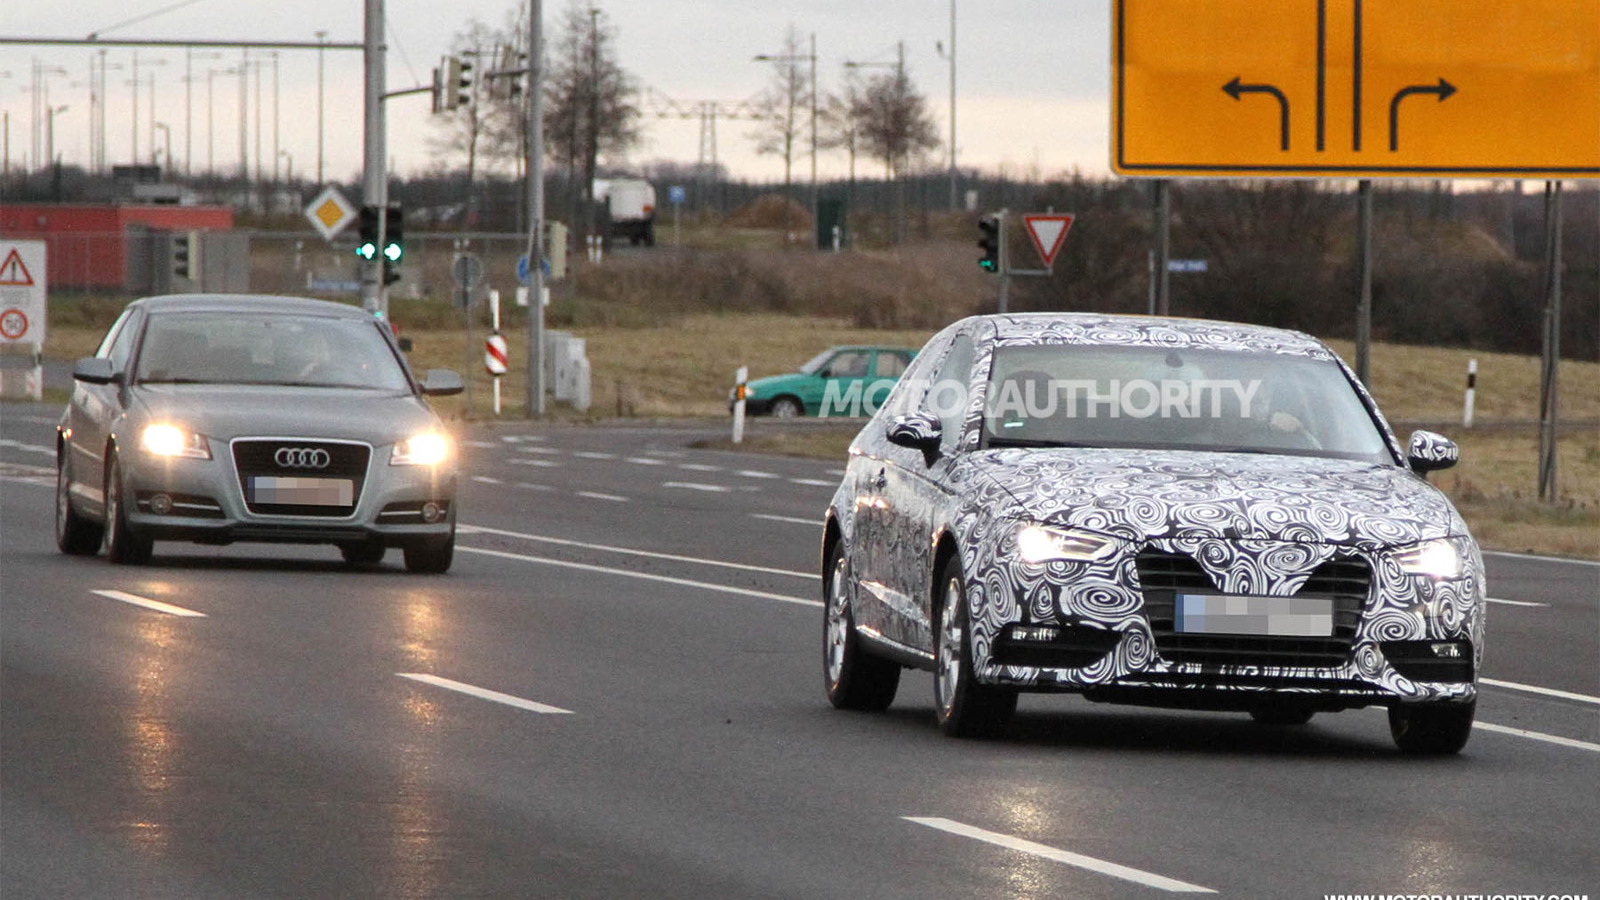 2013 Audi A3 Hatchback spy shots